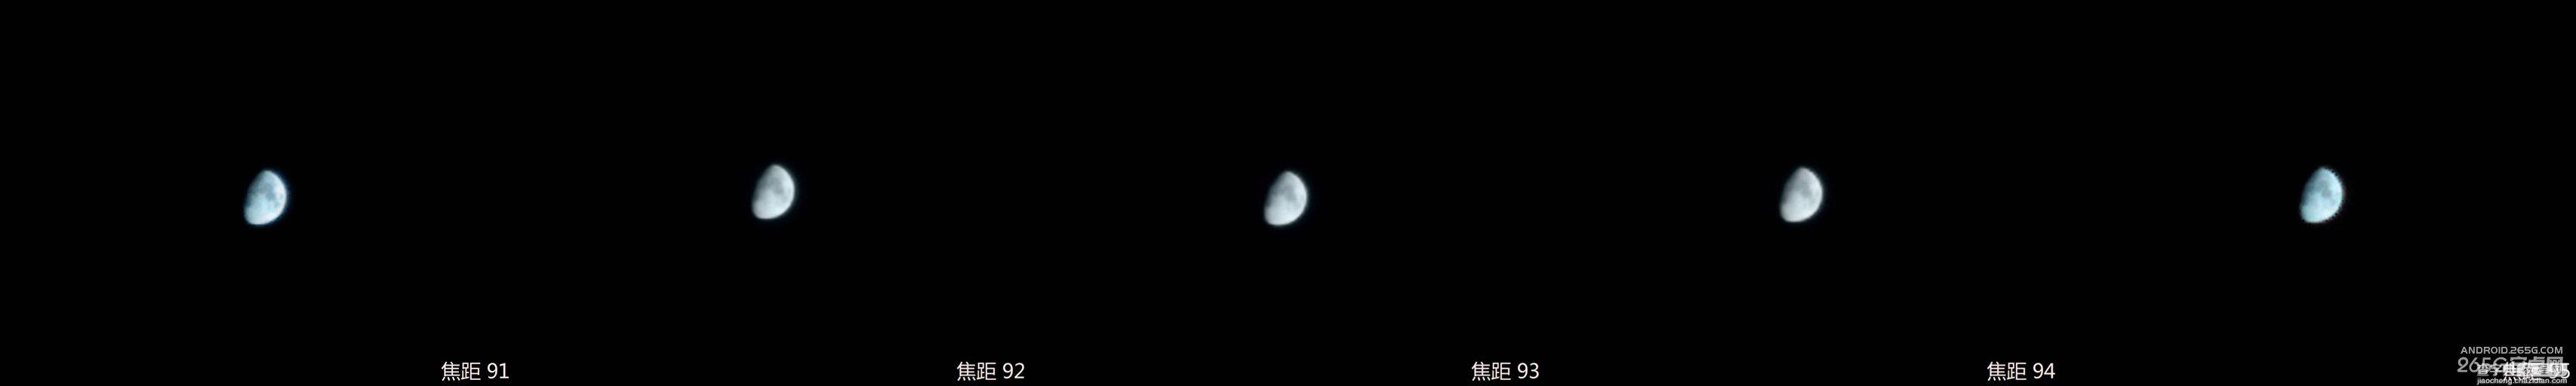 小米4拍照技巧：不用借助外接设备拍出不错的月亮效果19